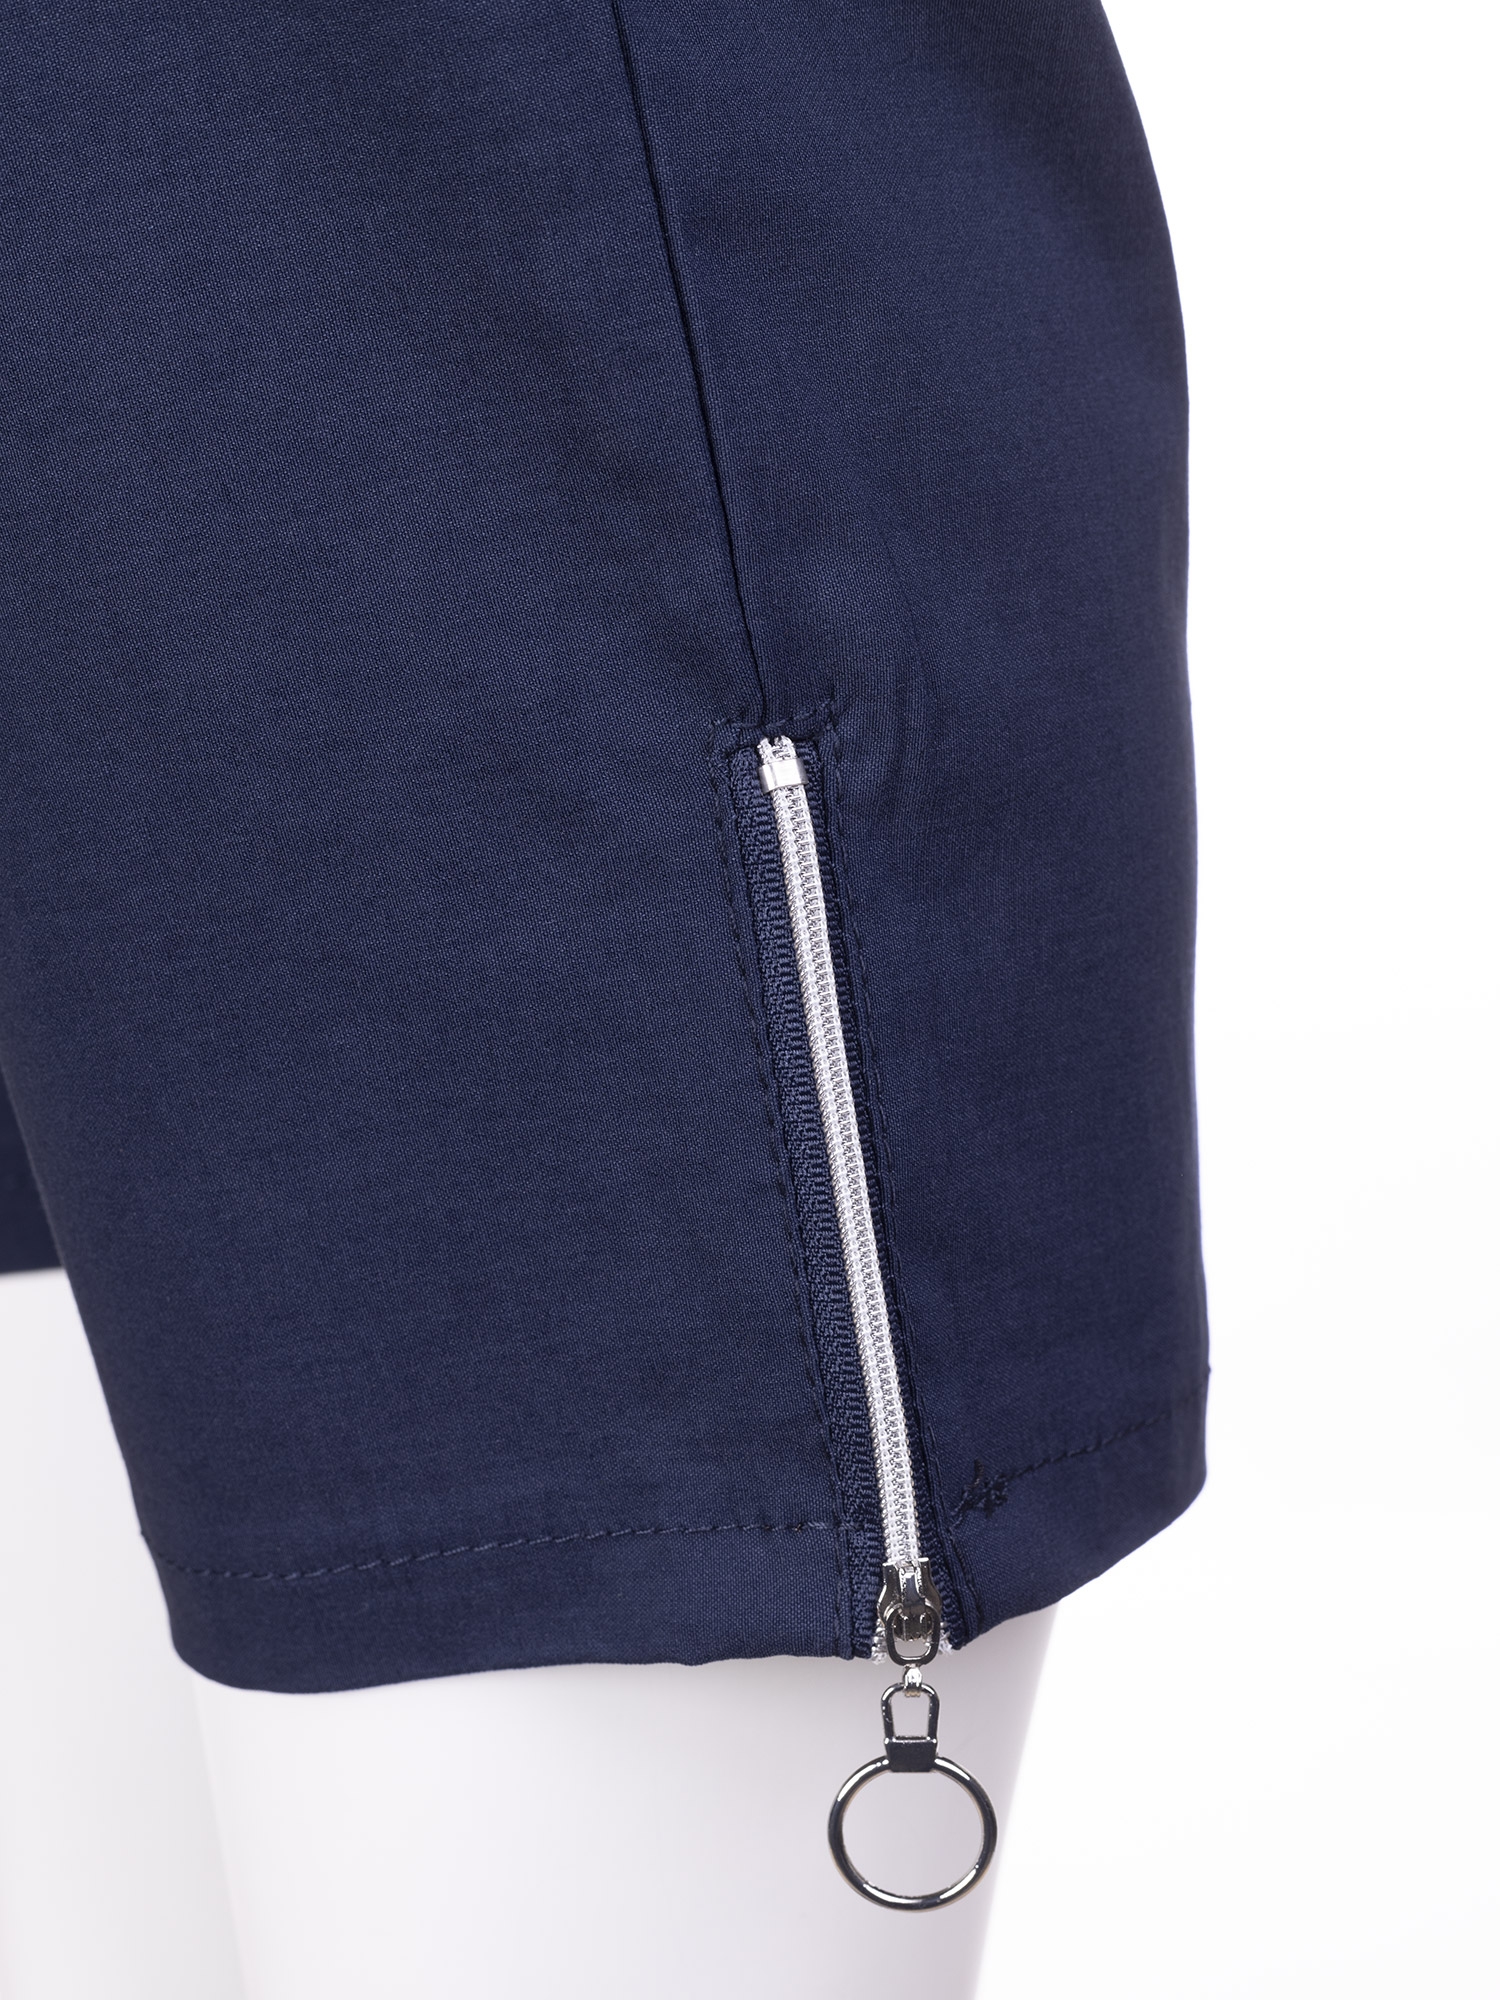 JAZZY - Mørkeblå capri bukser med lynlås detalje fra Zhenzi